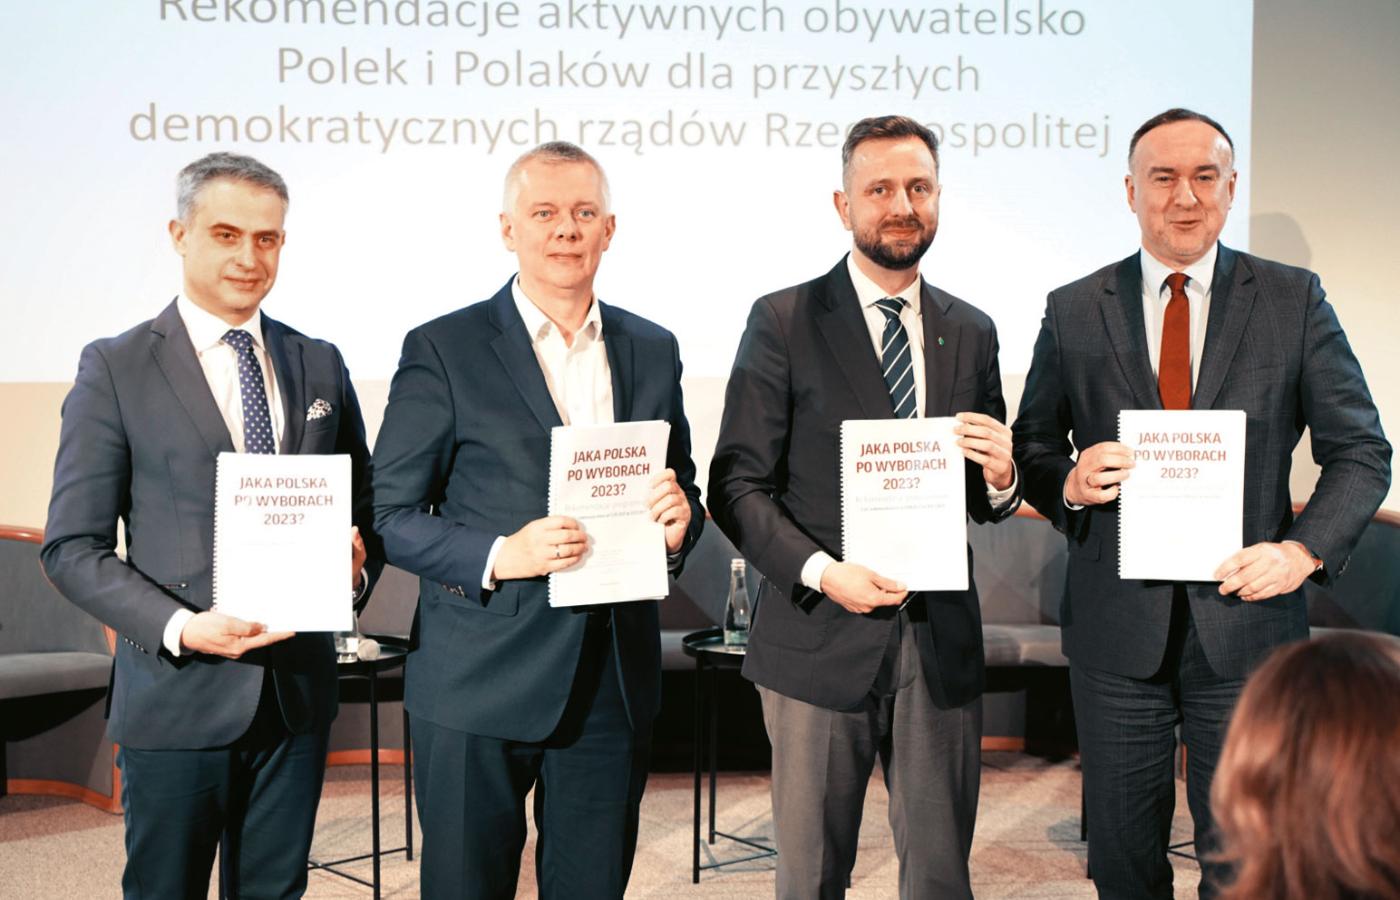 Od lewej: Krzysztof Gawkowski, Tomasz Siemoniak, Władysław Kosiniak Kamysz i Michał Kobosko.